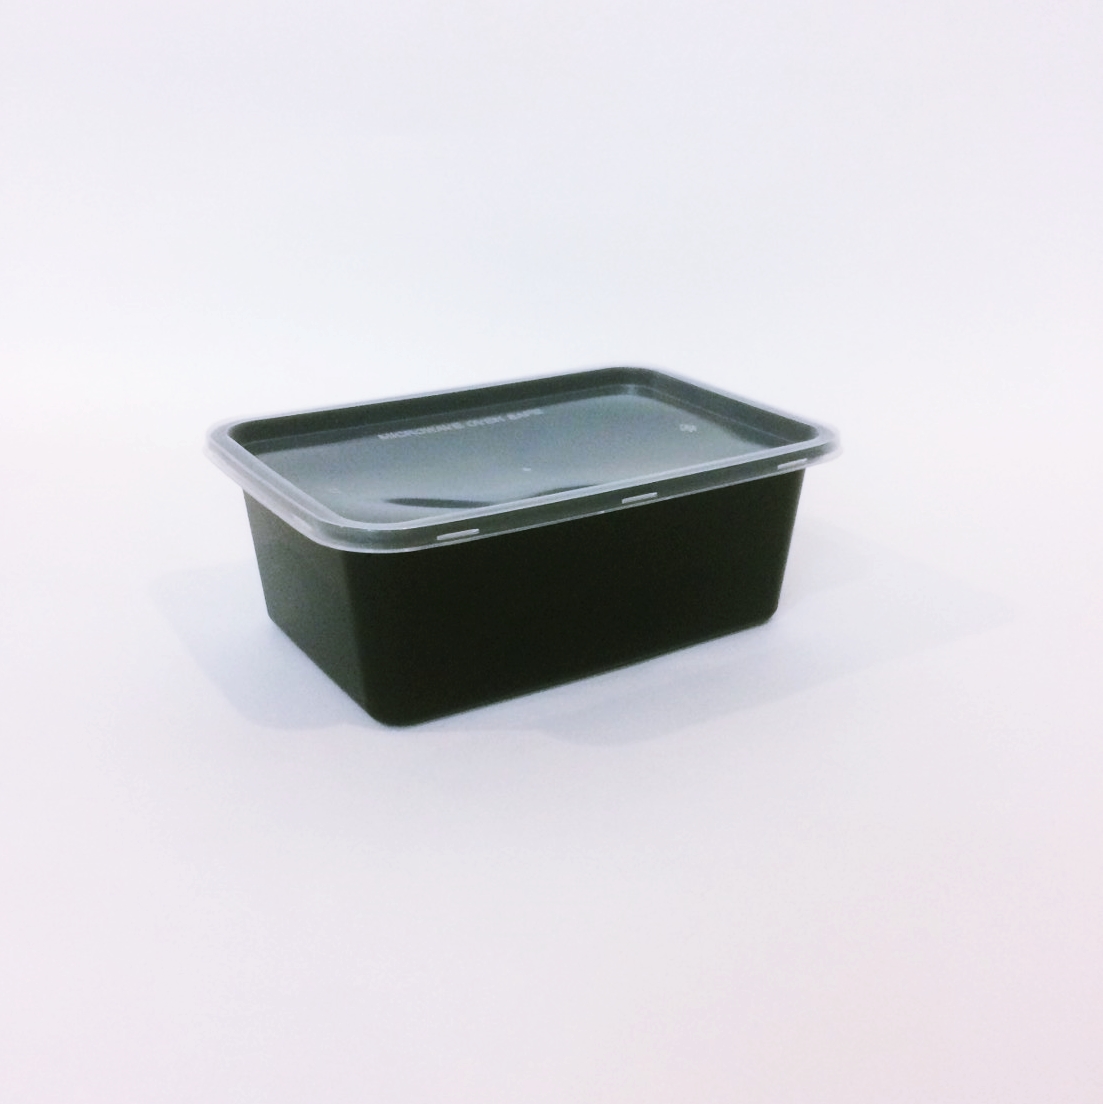 กล่องอาหารทรงสี่เหลี่ยม 1 ช่อง สีดำ